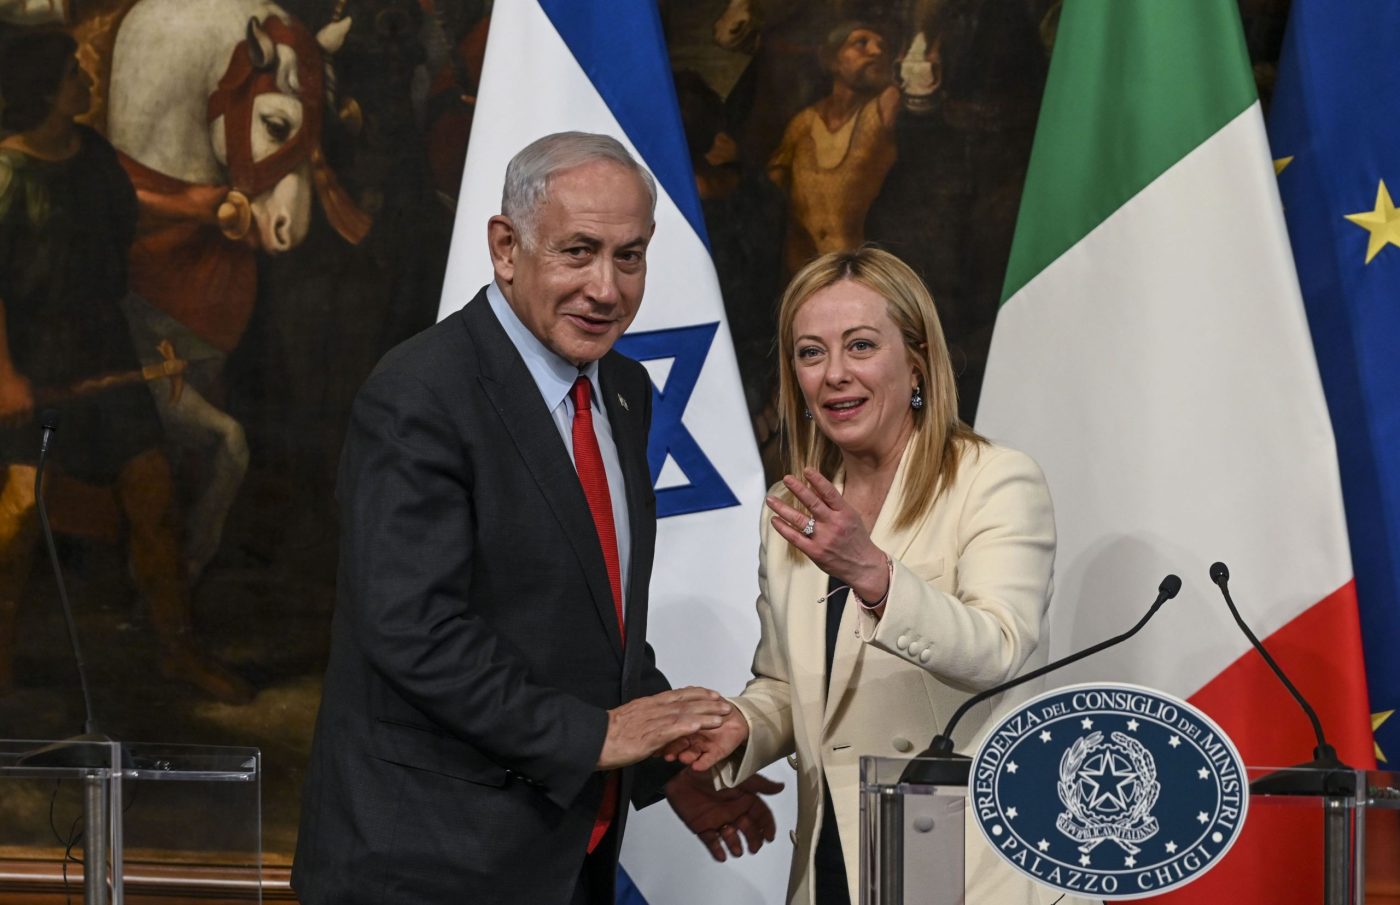 نتنياهو وميلوني يدفعان باتجاه “قفزة نوعية” في العلاقات بين إسرائيل وإيطاليا